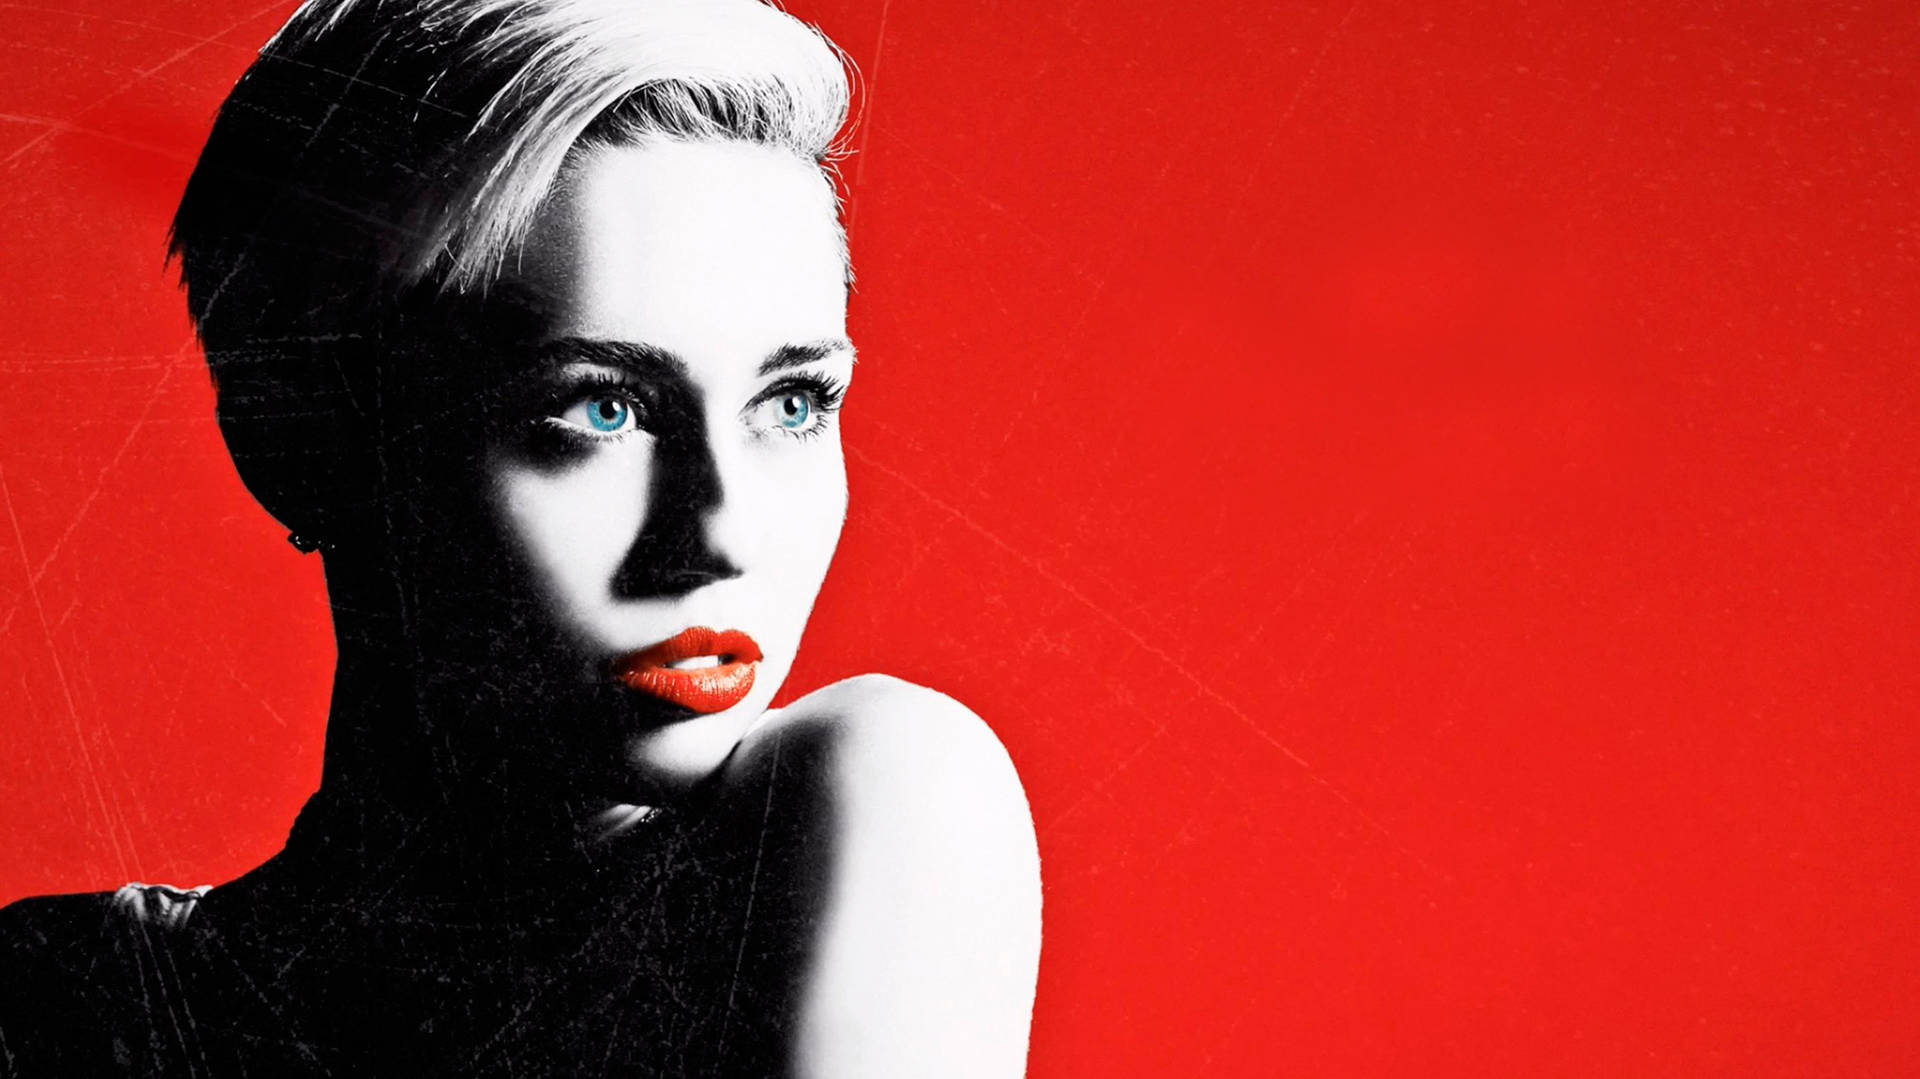 Miley Cyrus Fan Art In Red